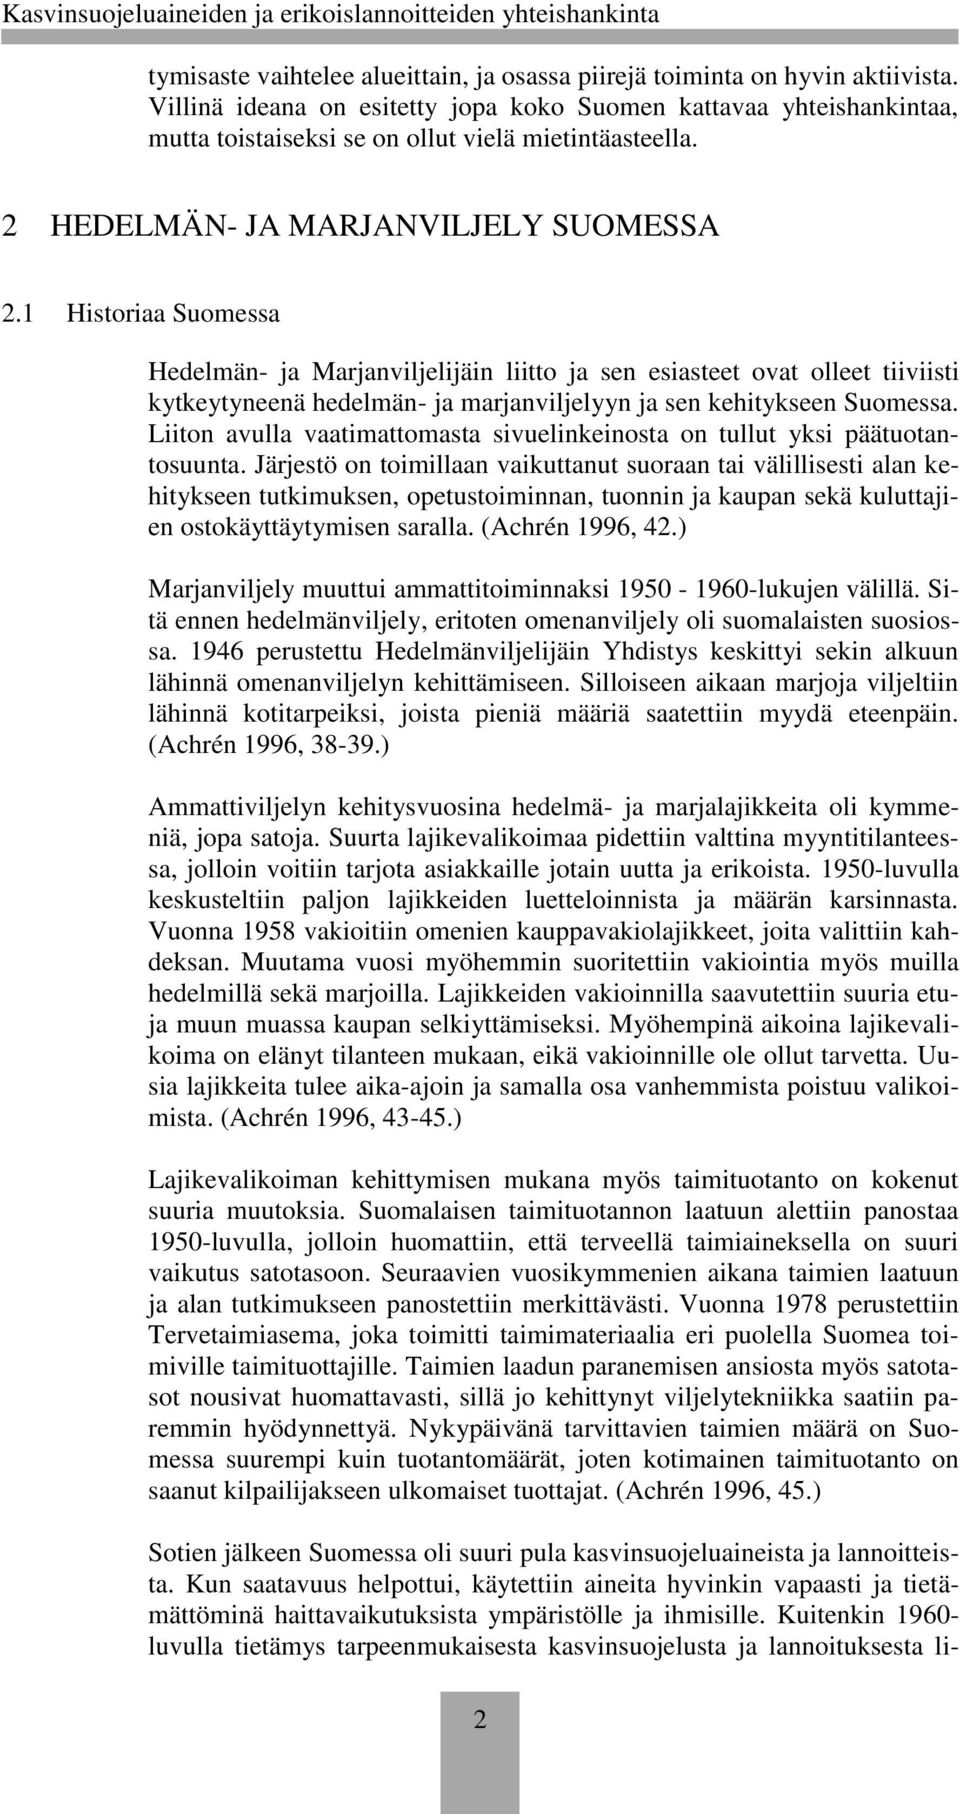 1 Historiaa Suomessa Hedelmän- ja Marjanviljelijäin liitto ja sen esiasteet ovat olleet tiiviisti kytkeytyneenä hedelmän- ja marjanviljelyyn ja sen kehitykseen Suomessa.